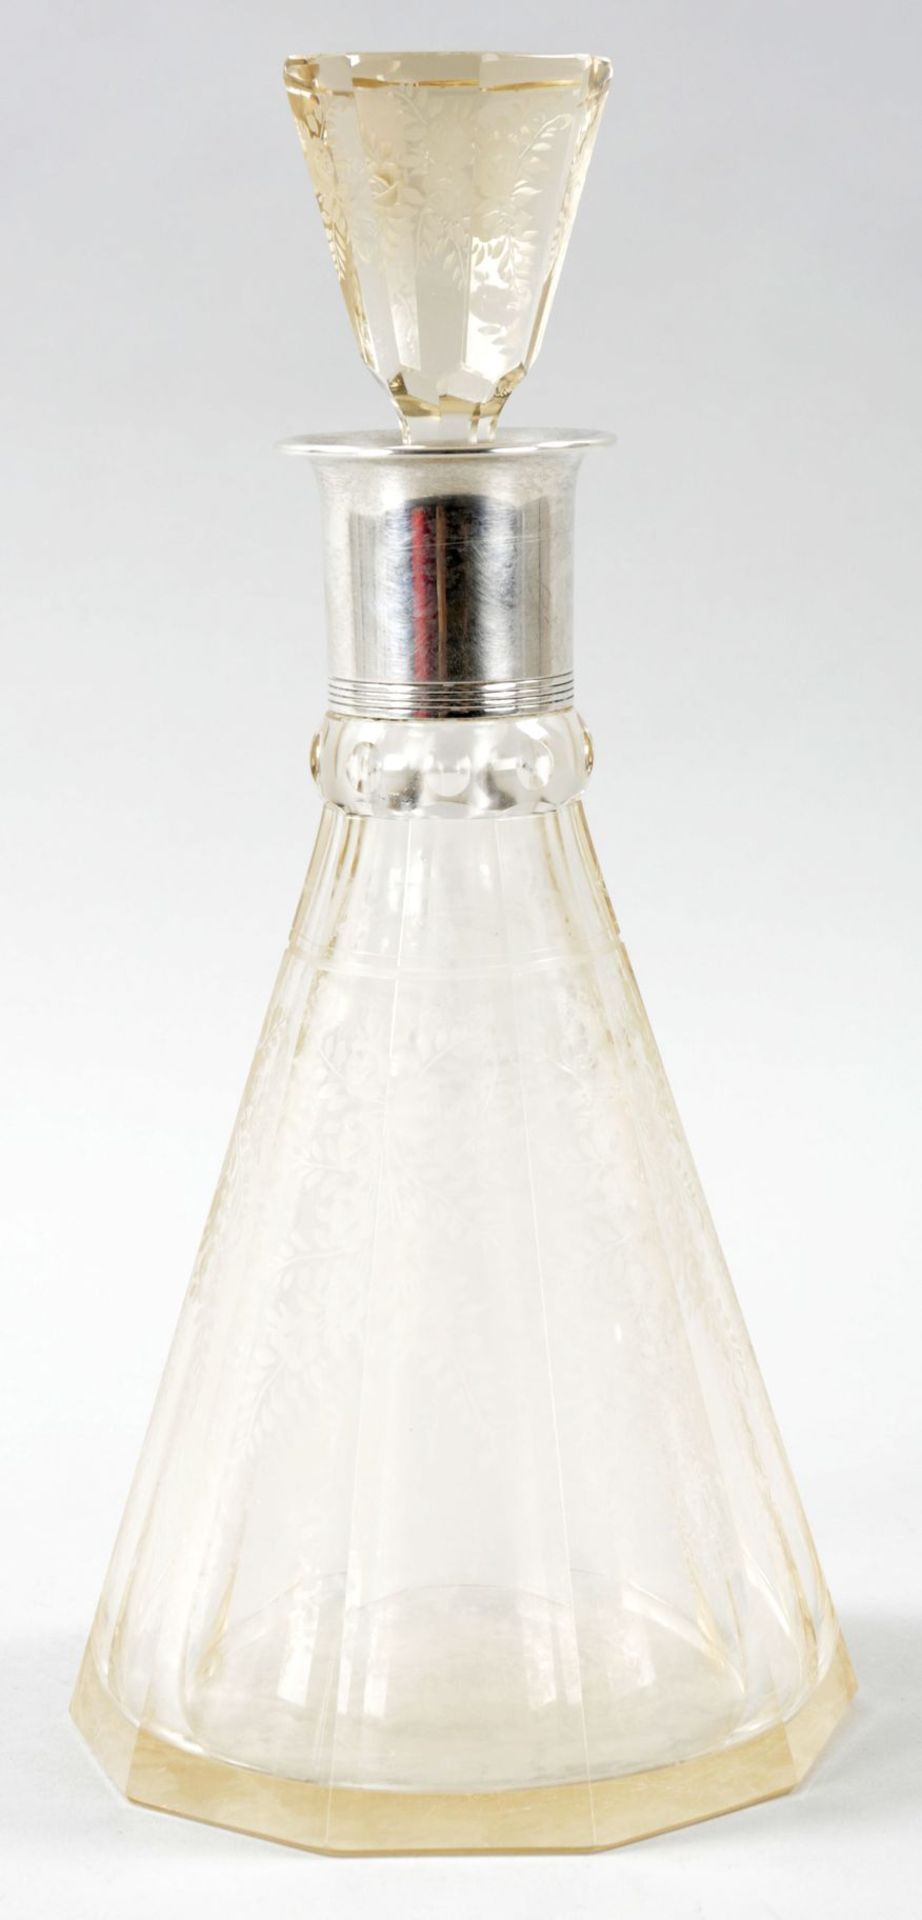 Karaffe925er Silber/Glas, wohl Norwegen, 1930er Jahre Korpus in Form eines dekagonal gekantetem